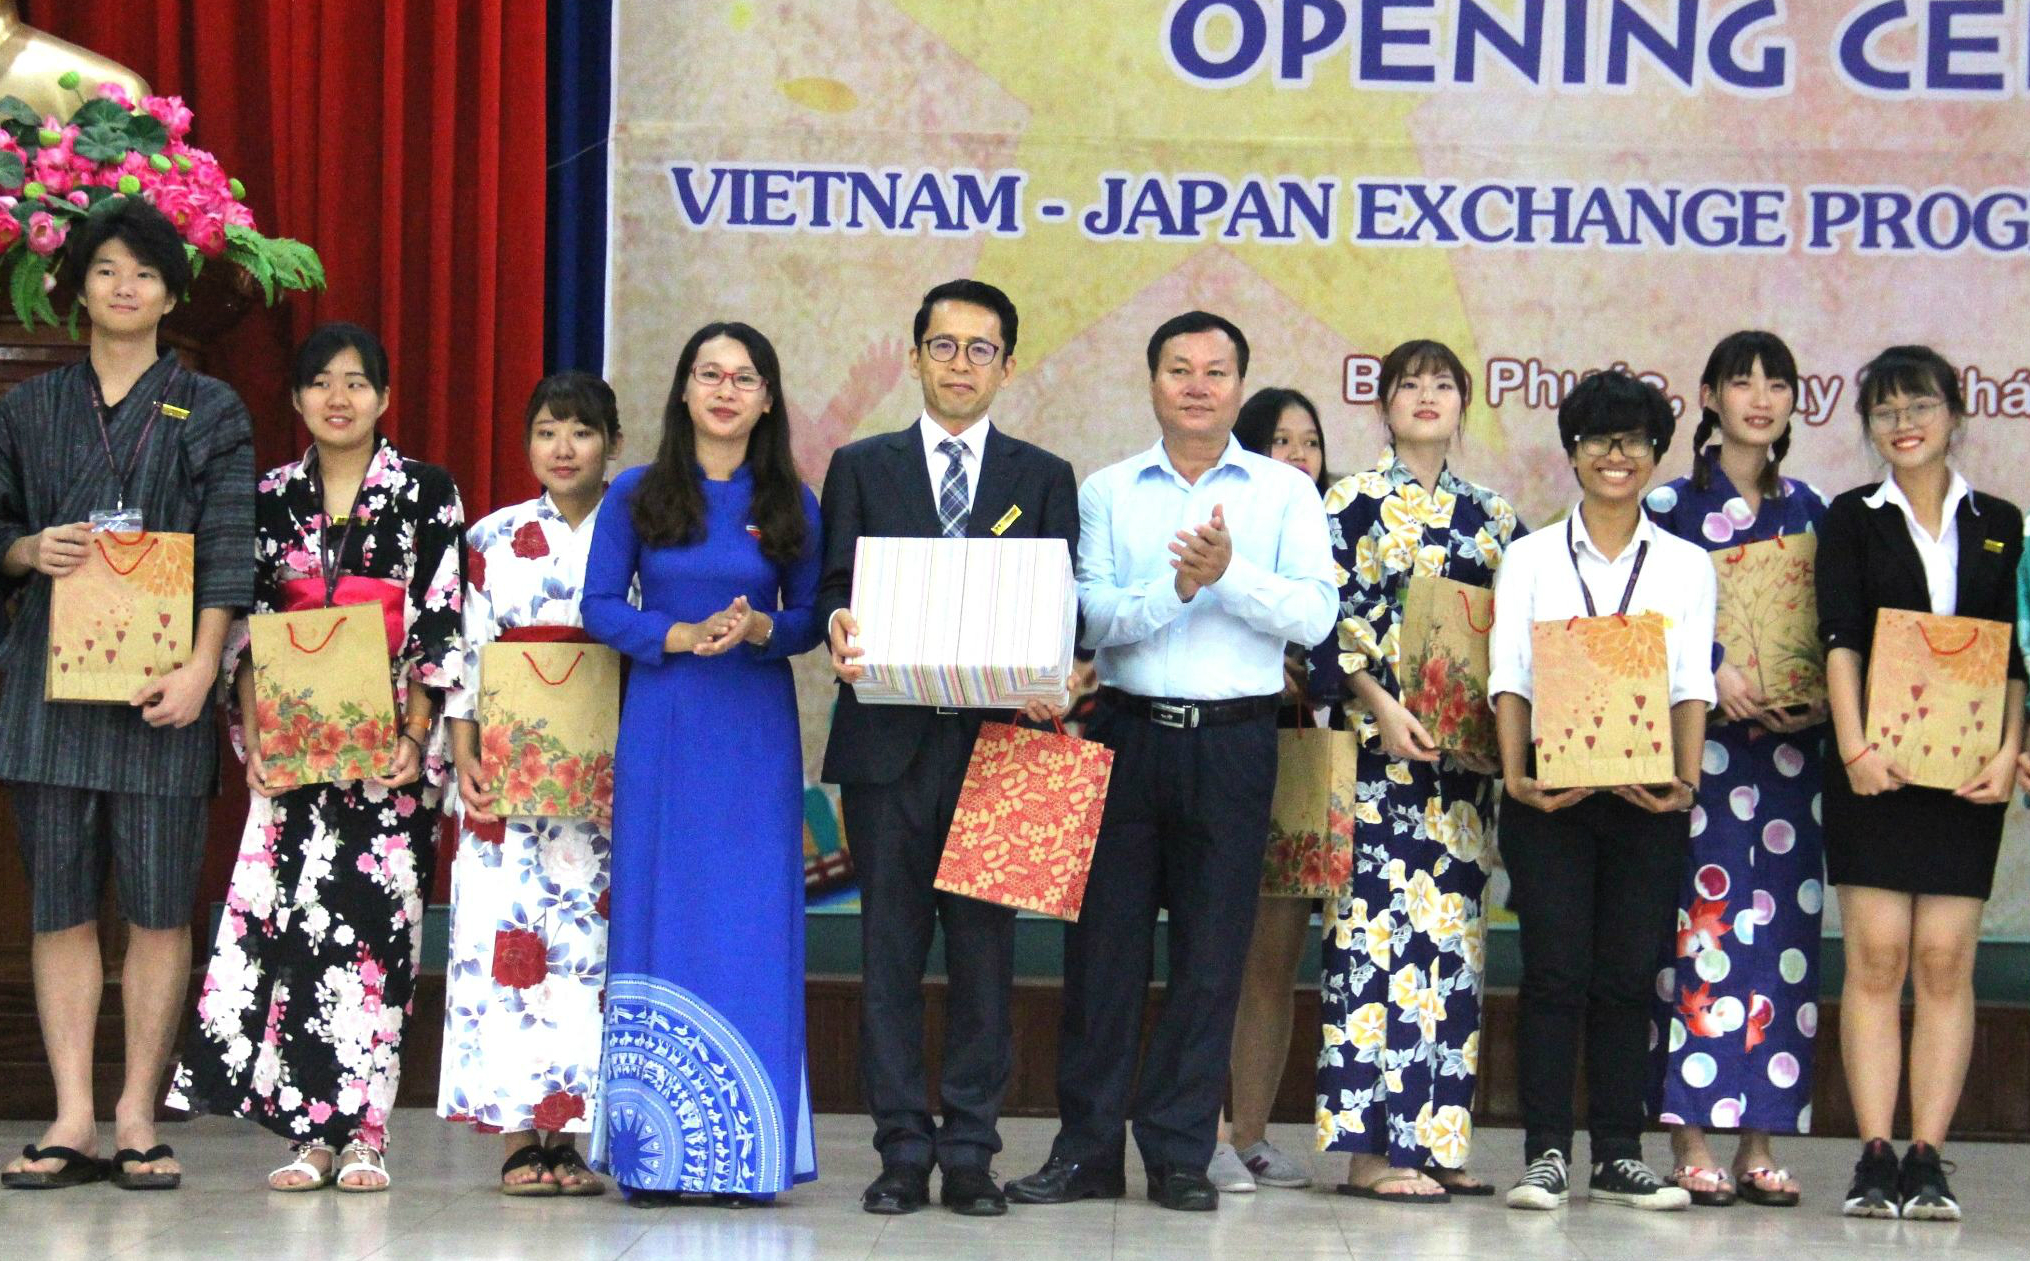 Lãnh đạo tỉnh tặng quà lưu niệm cho đoàn đại biểu sinh viên Việt - Nhật tại Lễ Khai mạc.